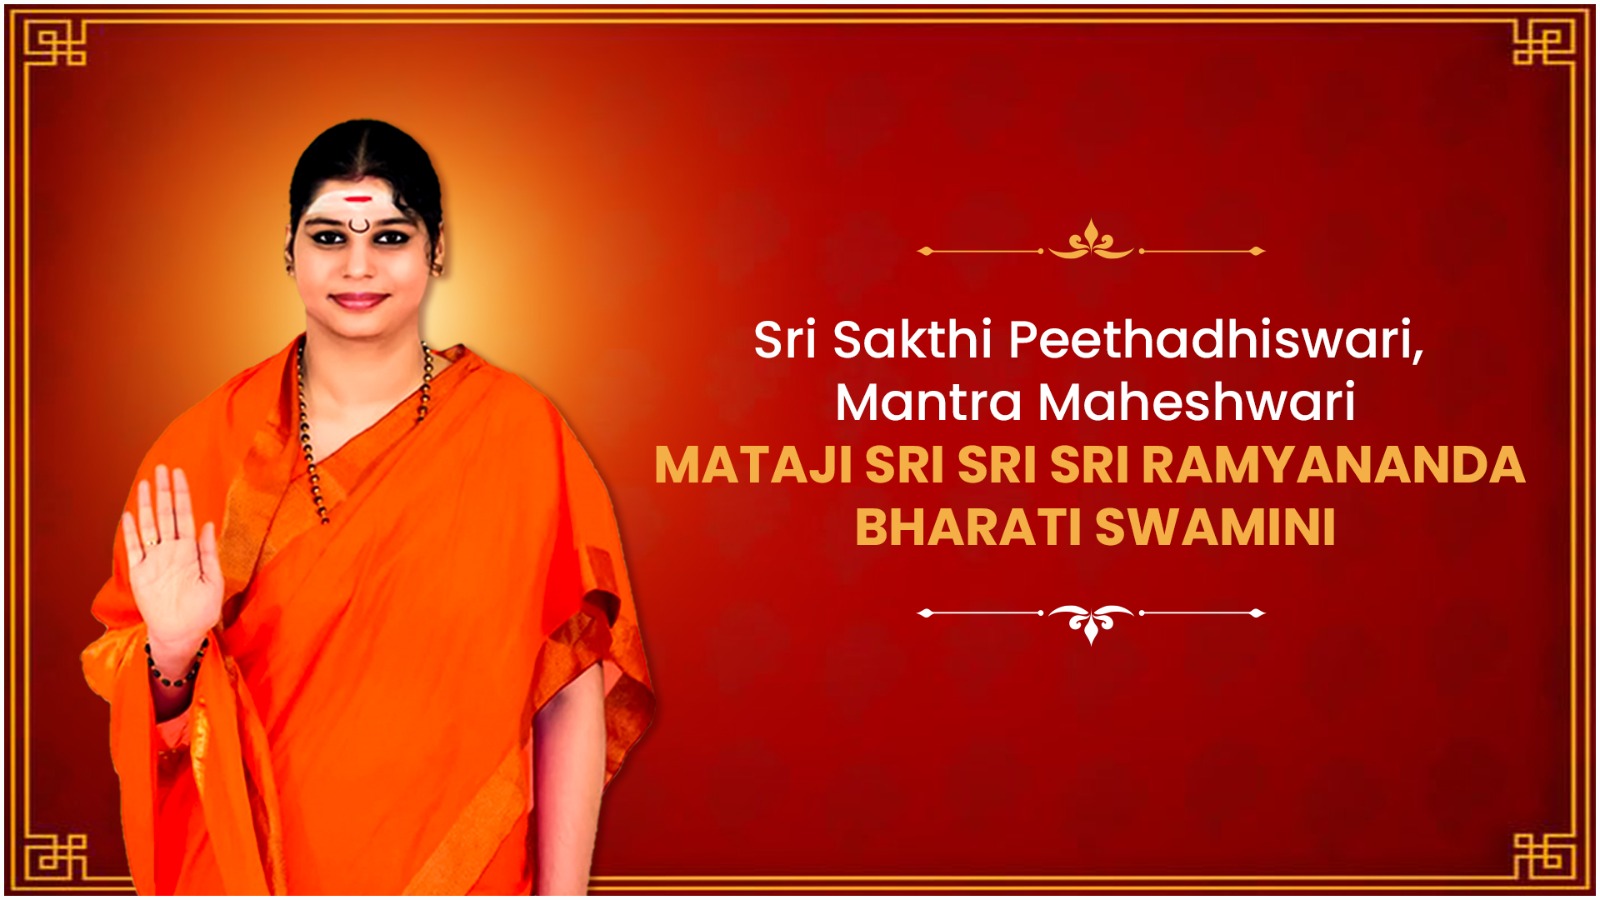 Mathaji Sri Ramyananda Bharati Swamini: Women Empowerment through Dharma & Devotion.